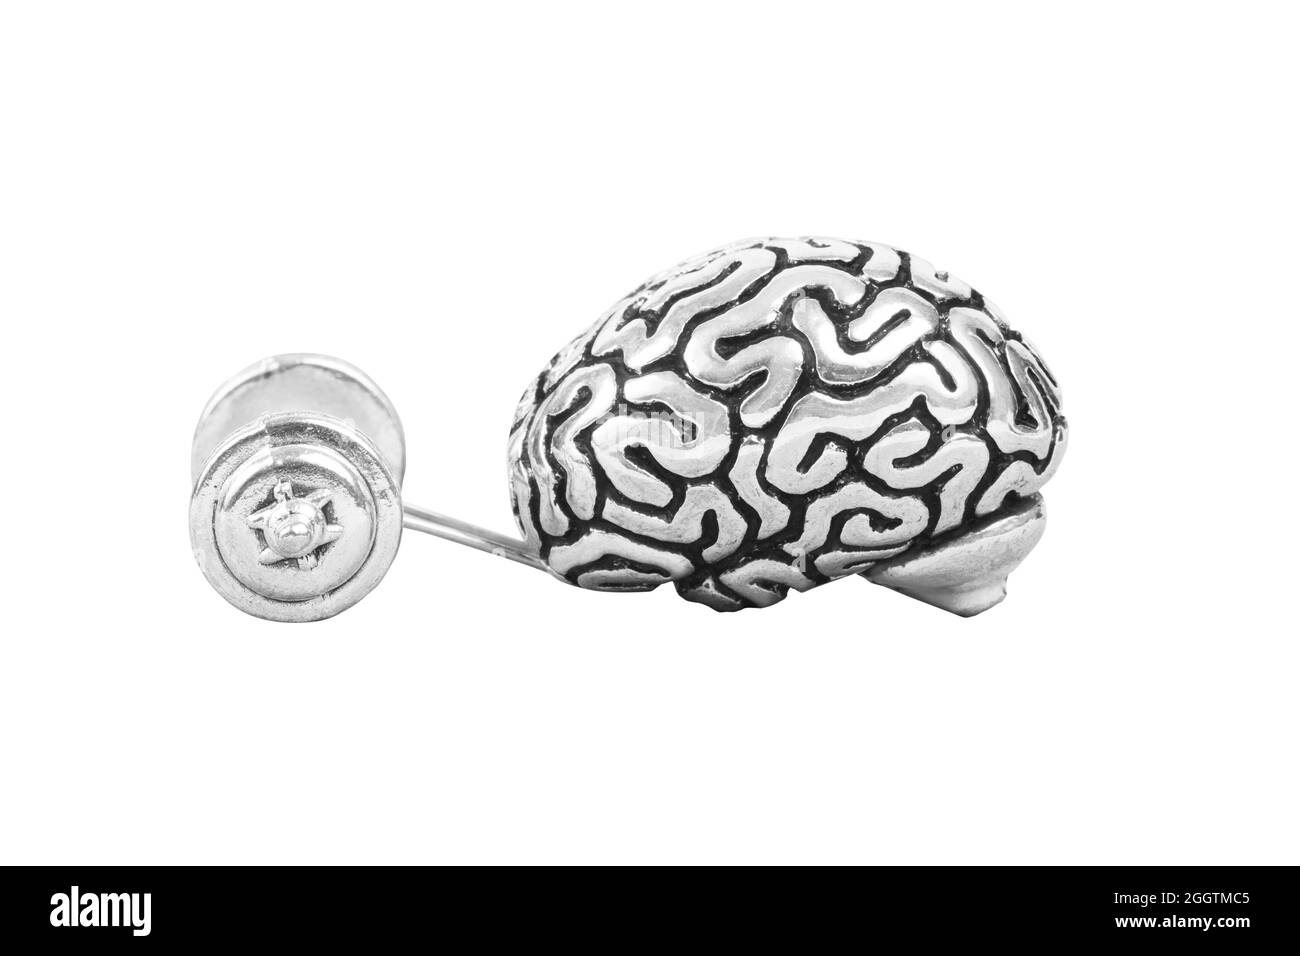 Cerebro humano levantando una pesa fuerte. Concepto de entrenamiento cerebral. Foto de stock